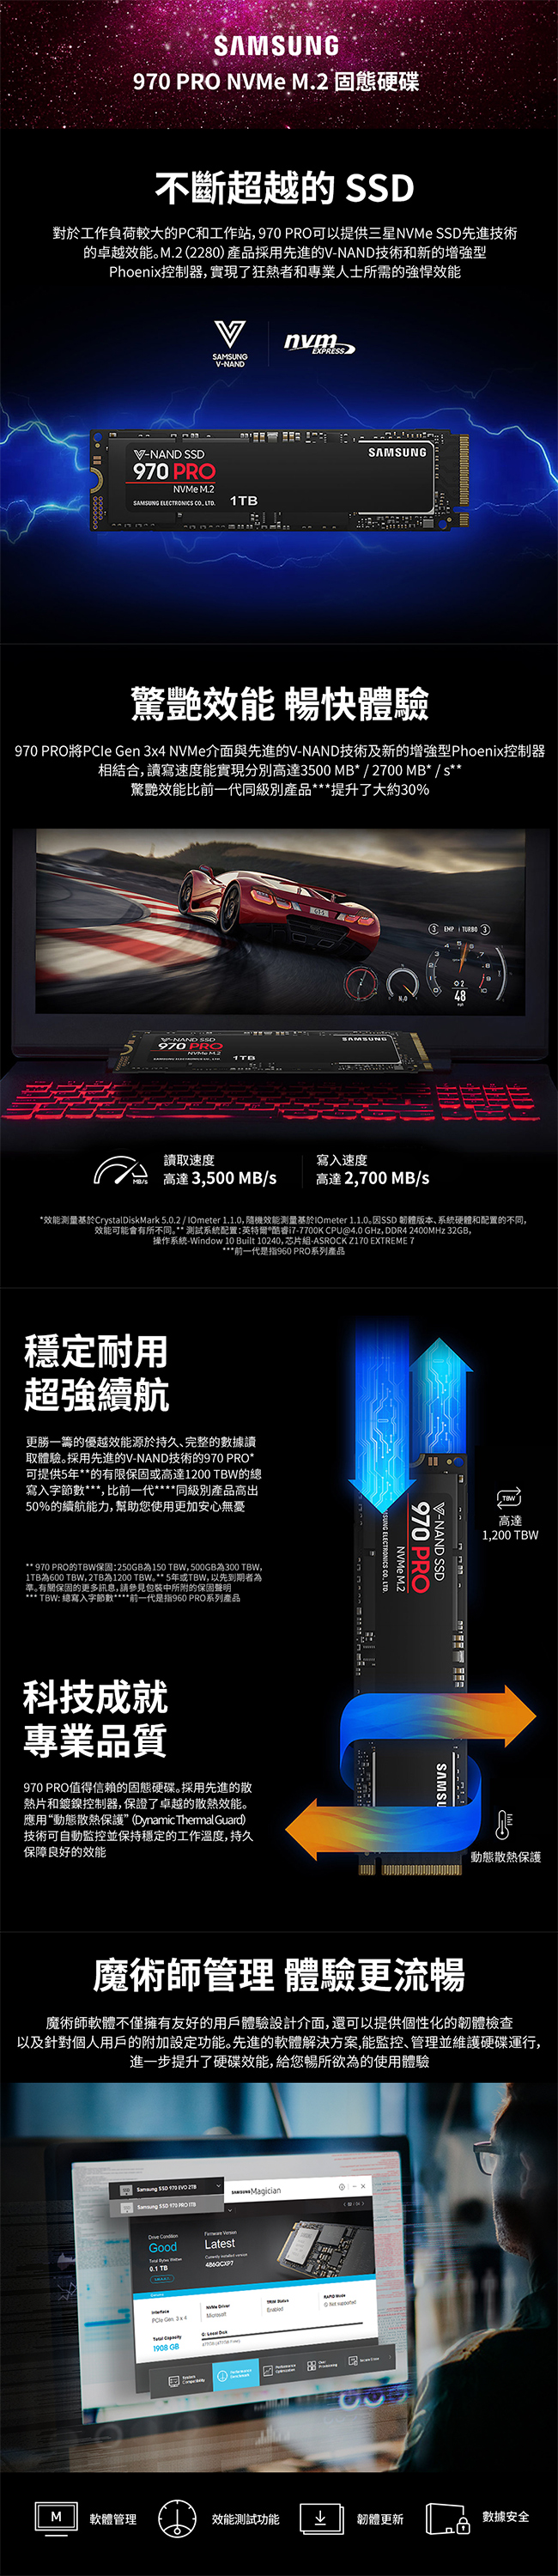 Samsung 970 PRO 1TB SSD固態硬碟